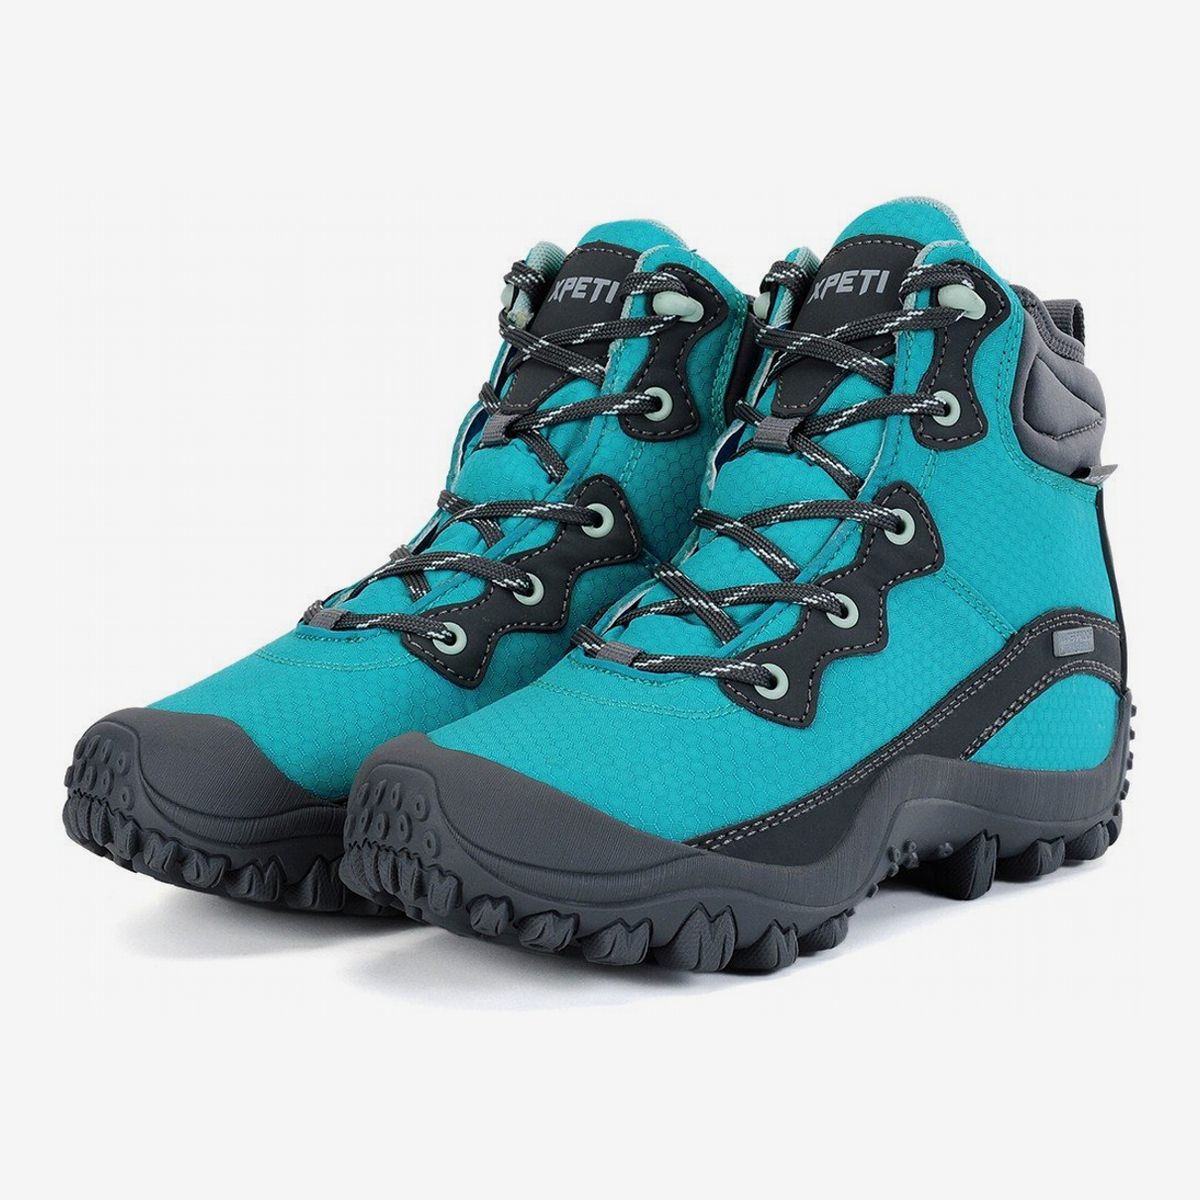 waterproof hiker shoes